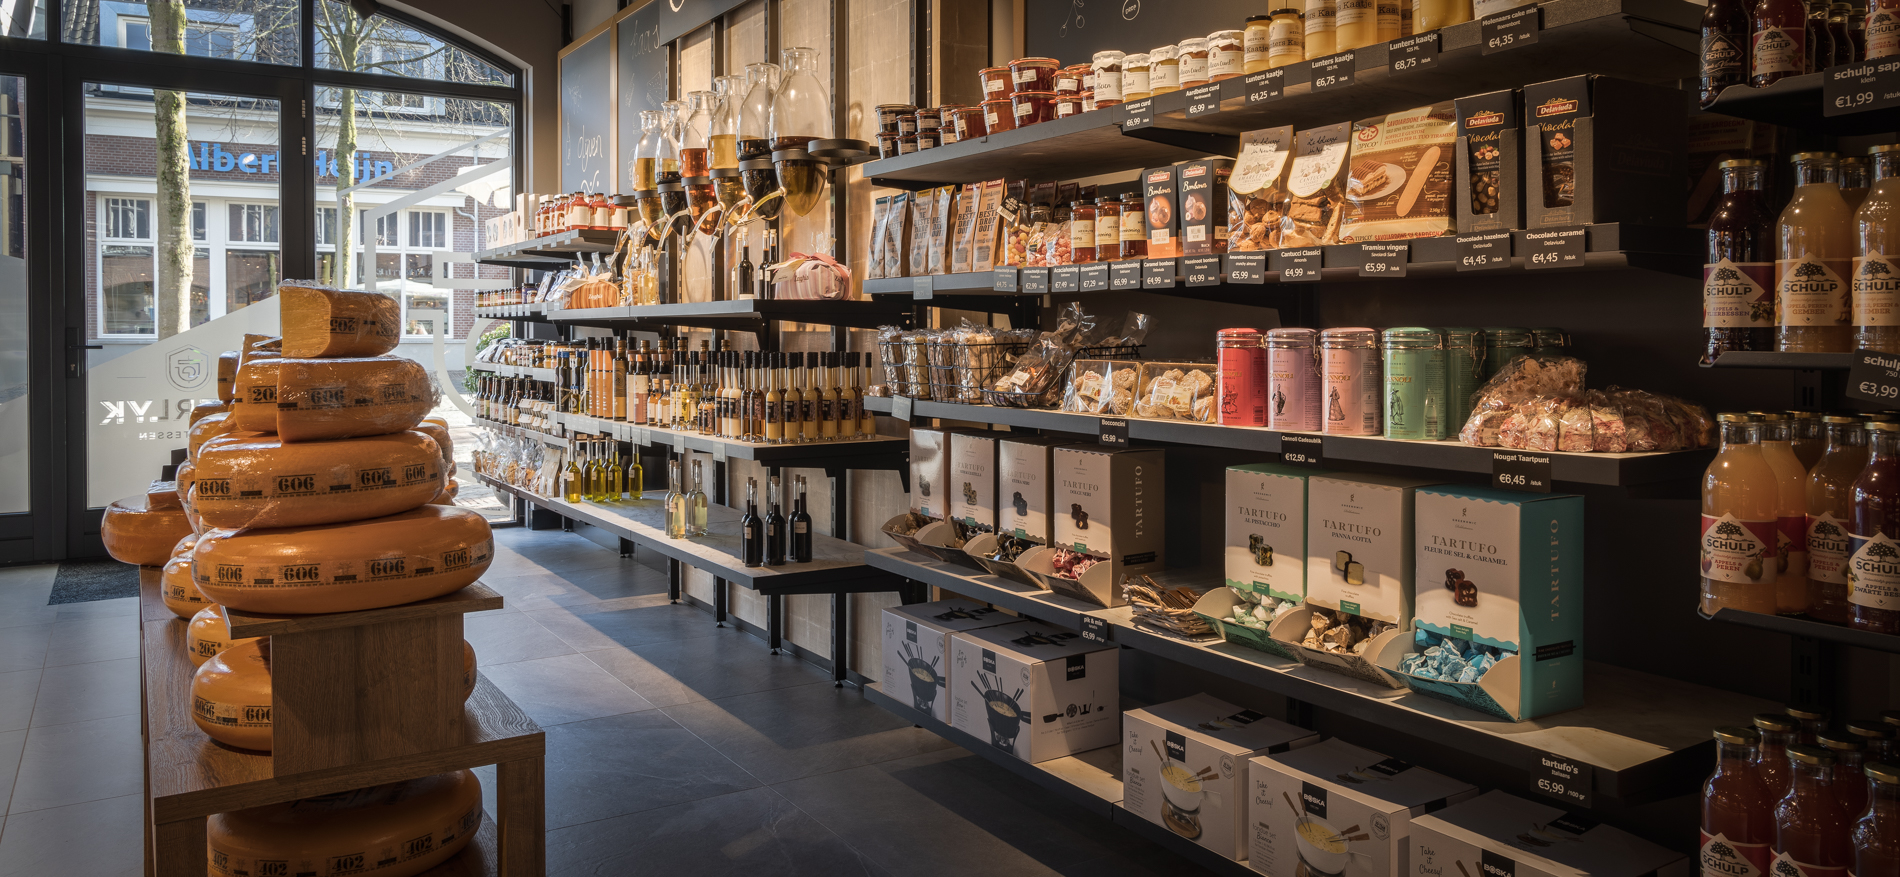 Heerlyk Delicatessen | Lunteren (NL) - Retail design